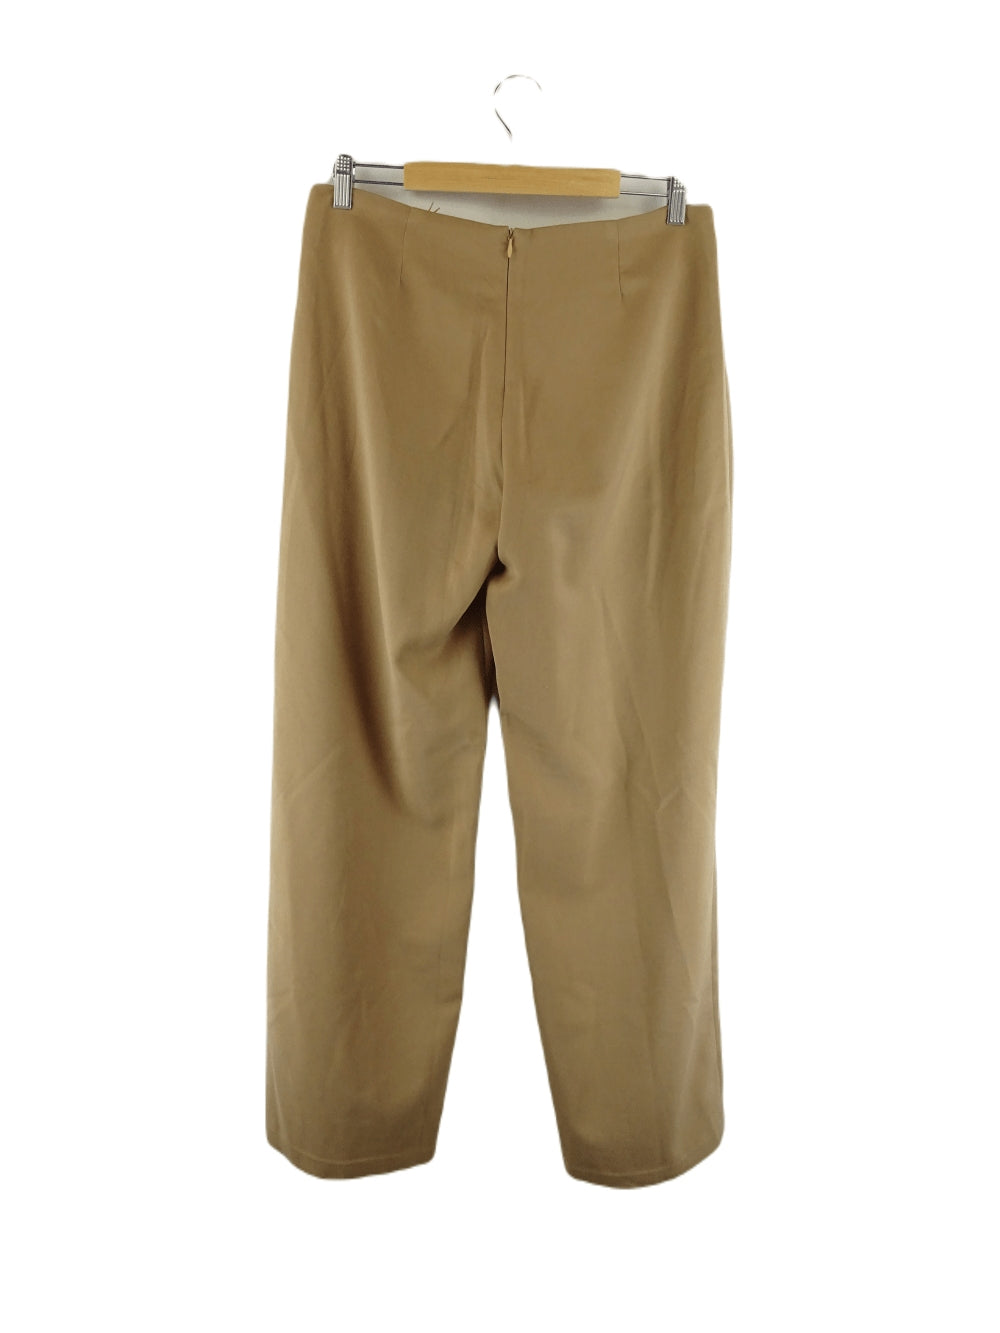 Zimmermann Vintage Brown Pants 14